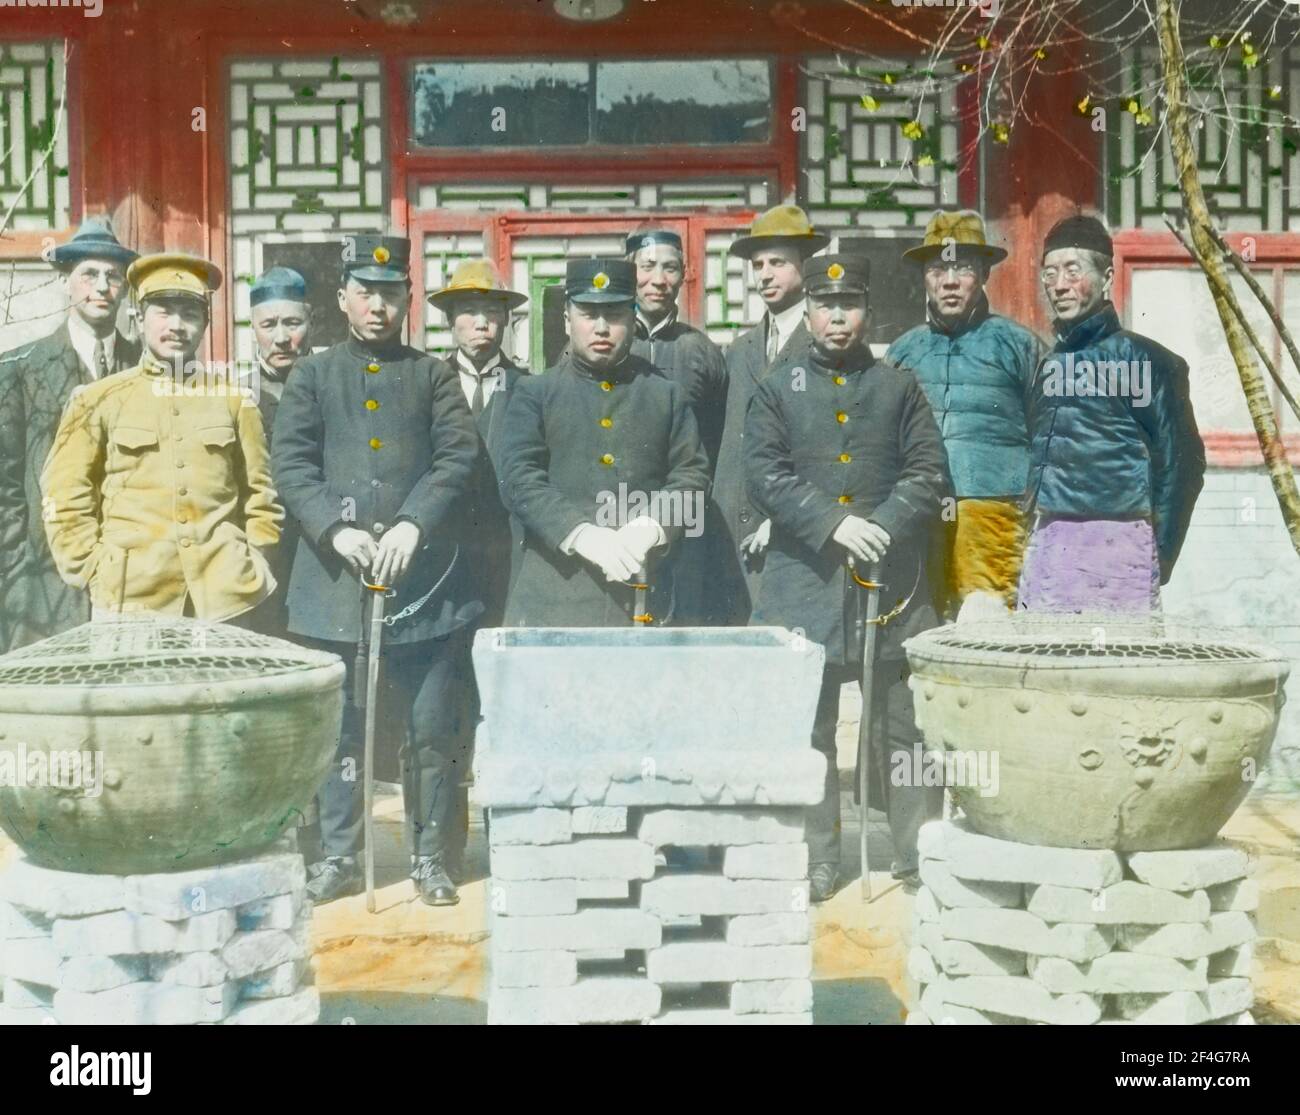 Ganztägige Gruppenaufnahme von Beamten und Kirchenpersonal, darunter ein Westler auf der linken Seite, der an einem sonnigen Tag vor einem Gefängniseingang stand, Peking, China, 1918. Aus der Sammlung Sidney D. Gamble Photographs. () Stockfoto